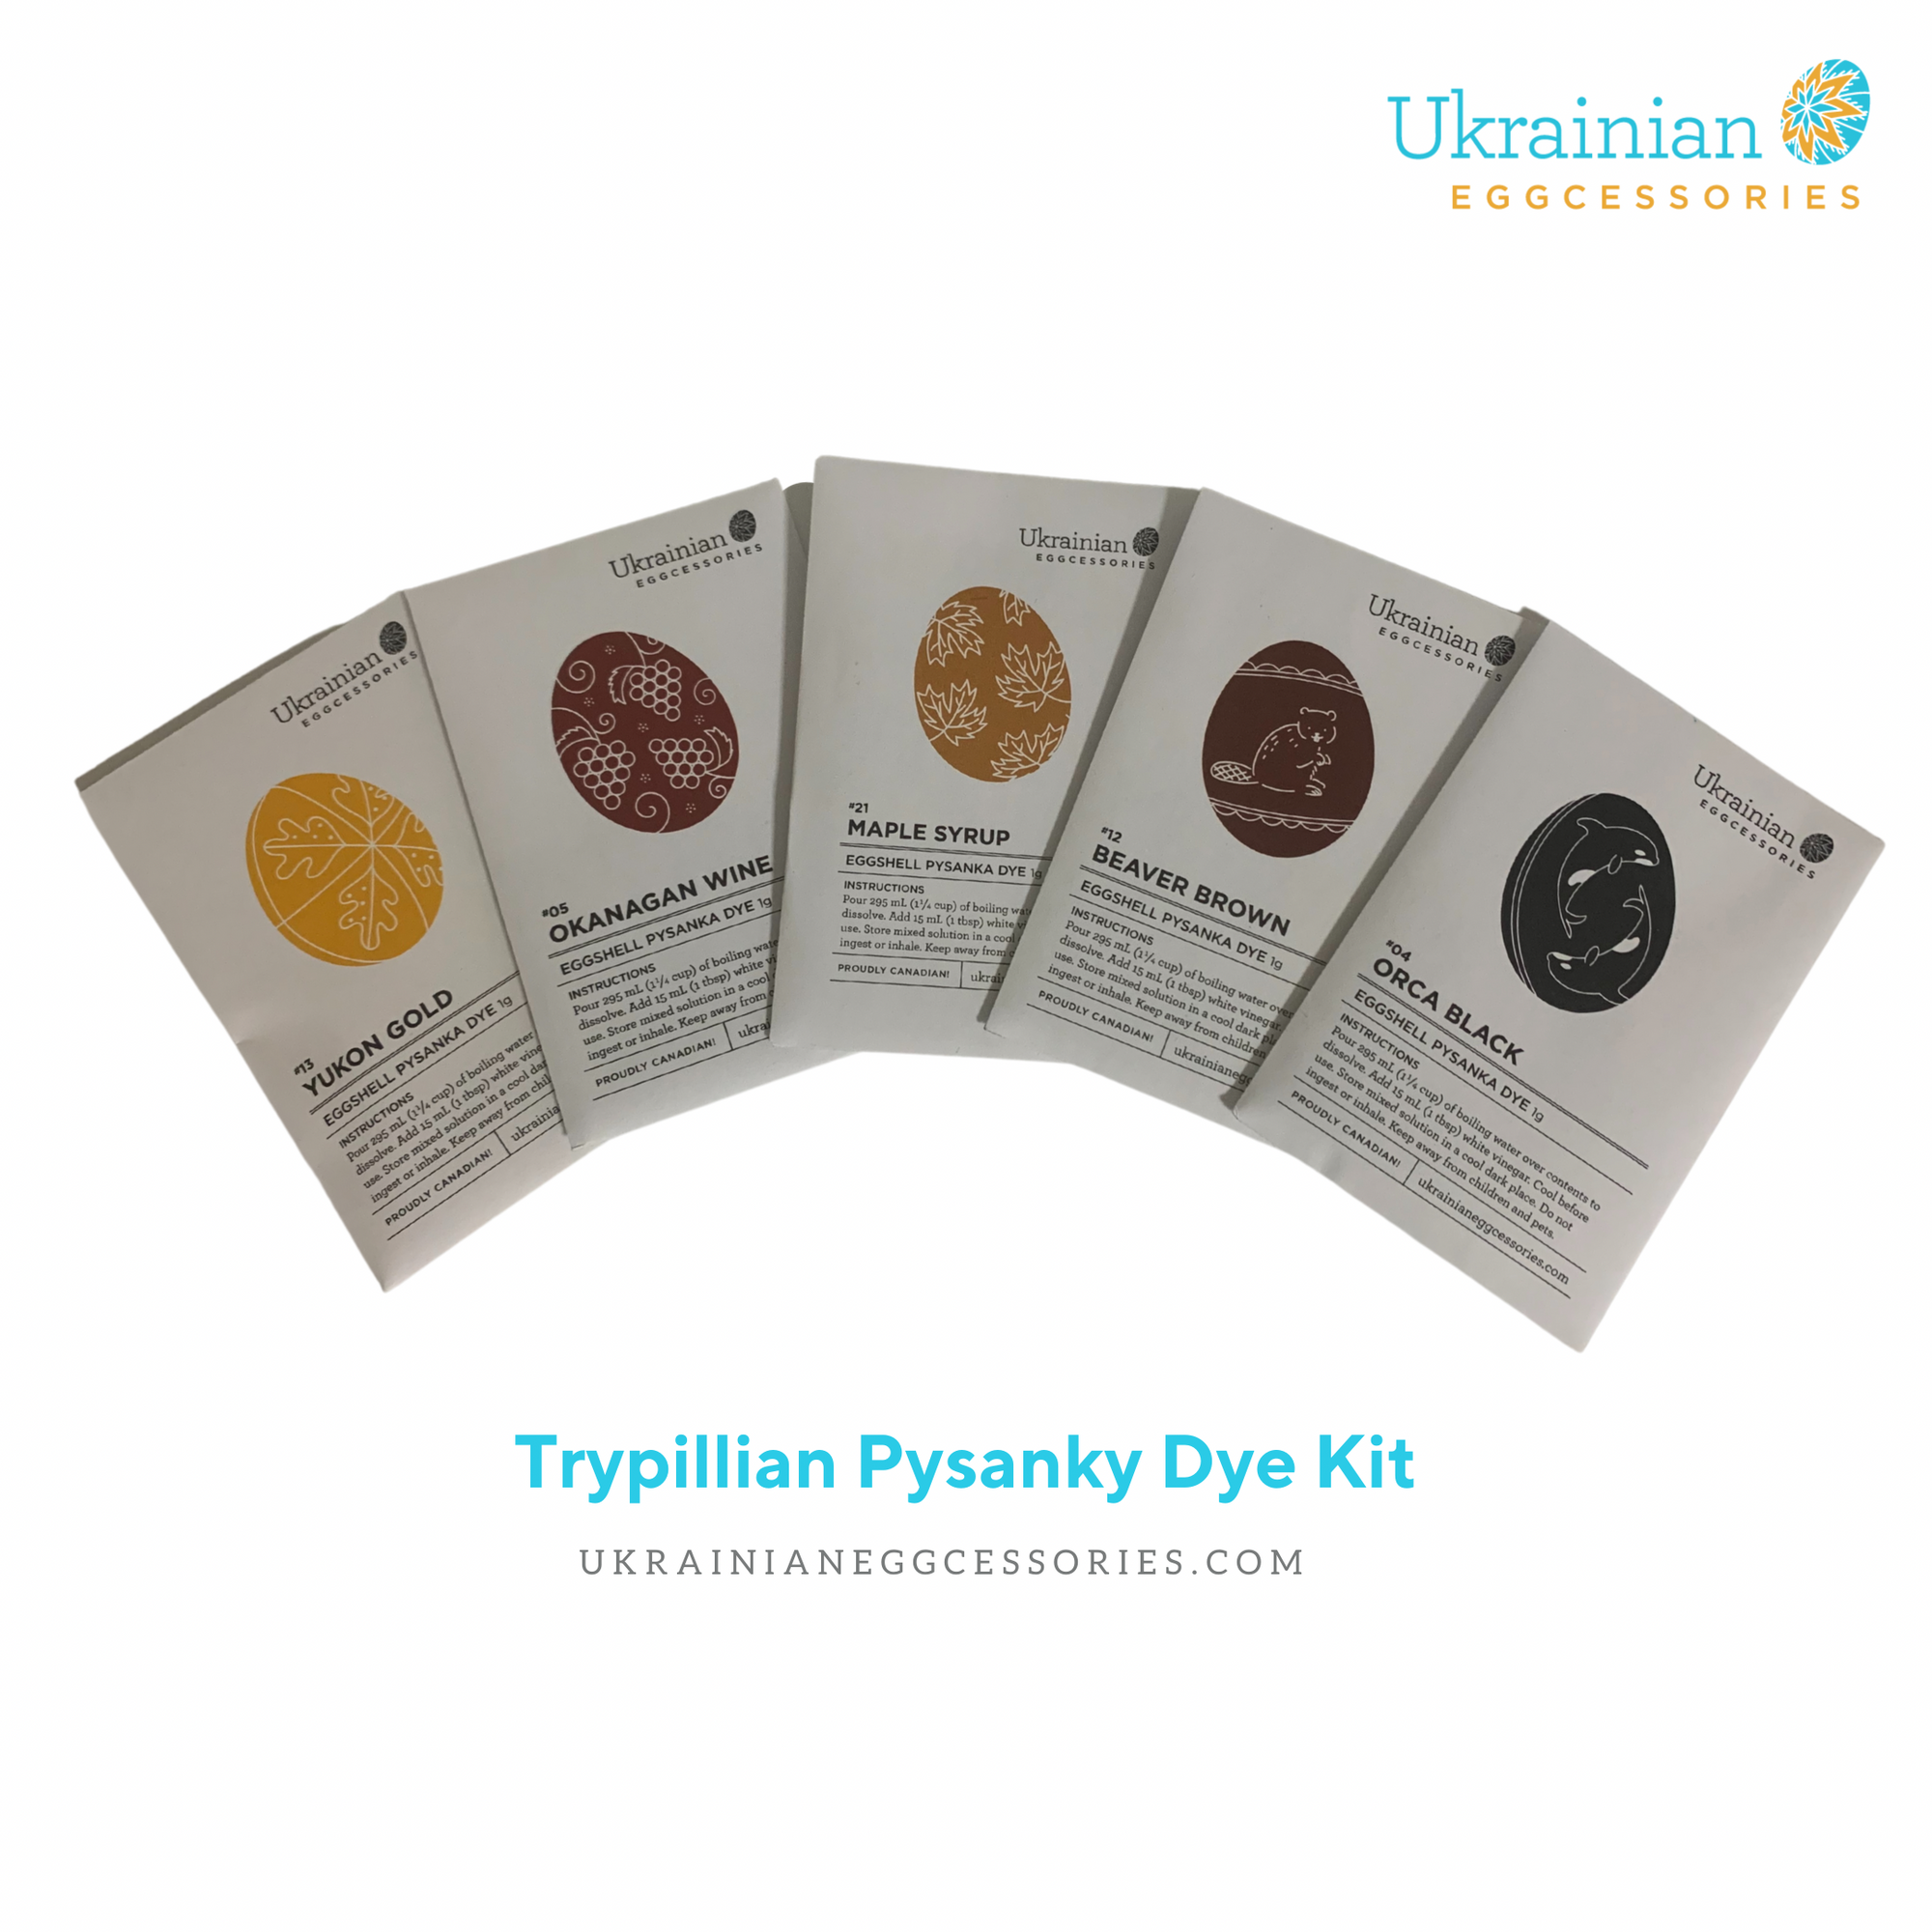 Dye Kits - Trypillian Pysanky Dye Kit